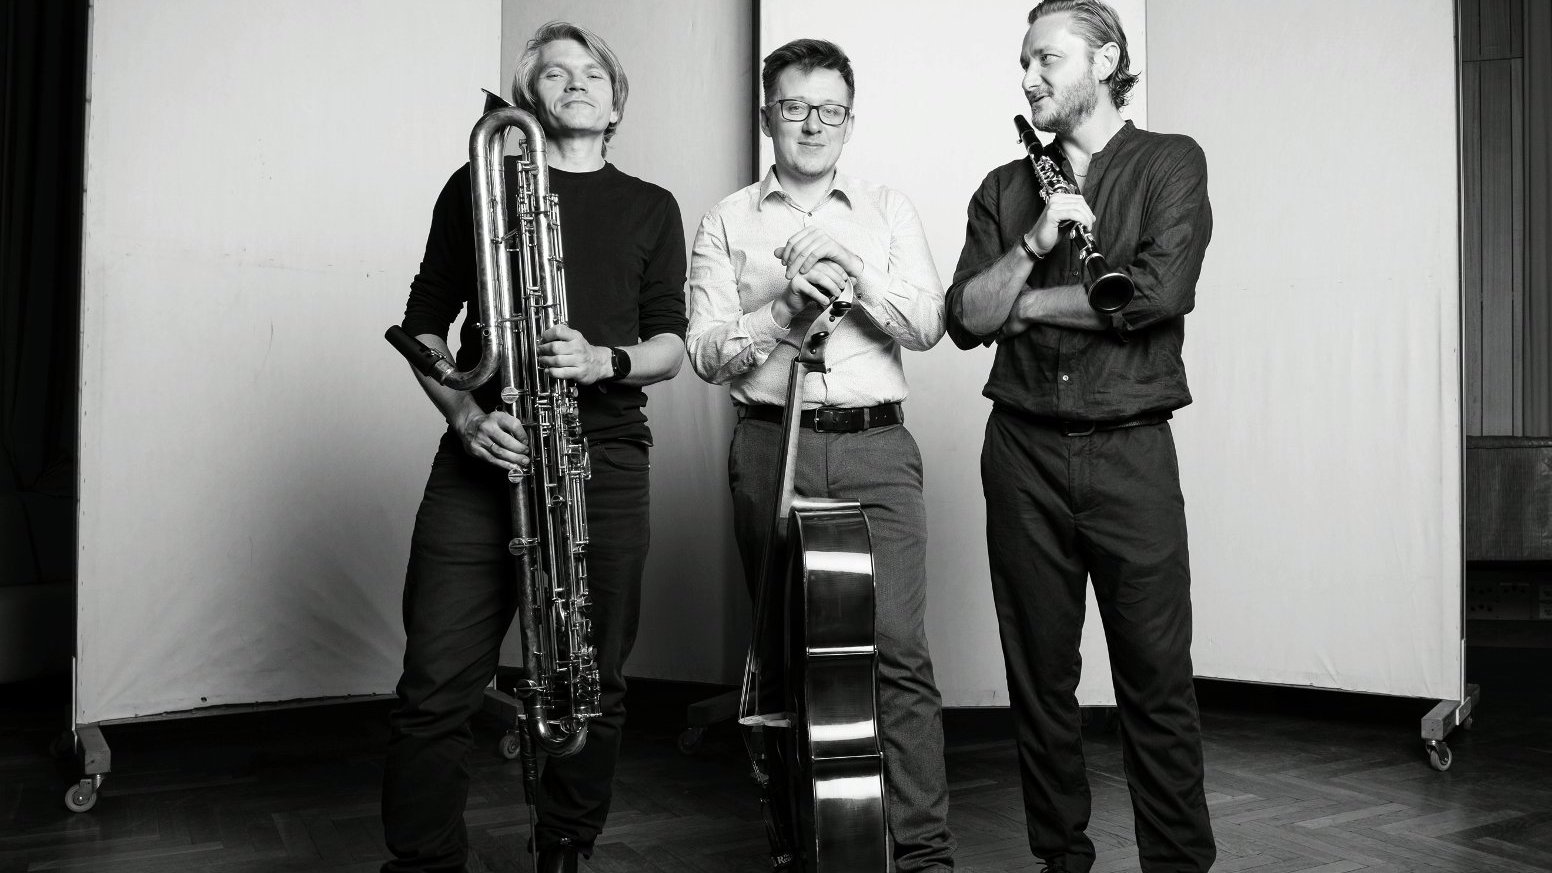 Trzech mężczyzn stoi z instrumentami muzycznymi: klarnetem kontrabasowym, wiolonczelą, klarnetem